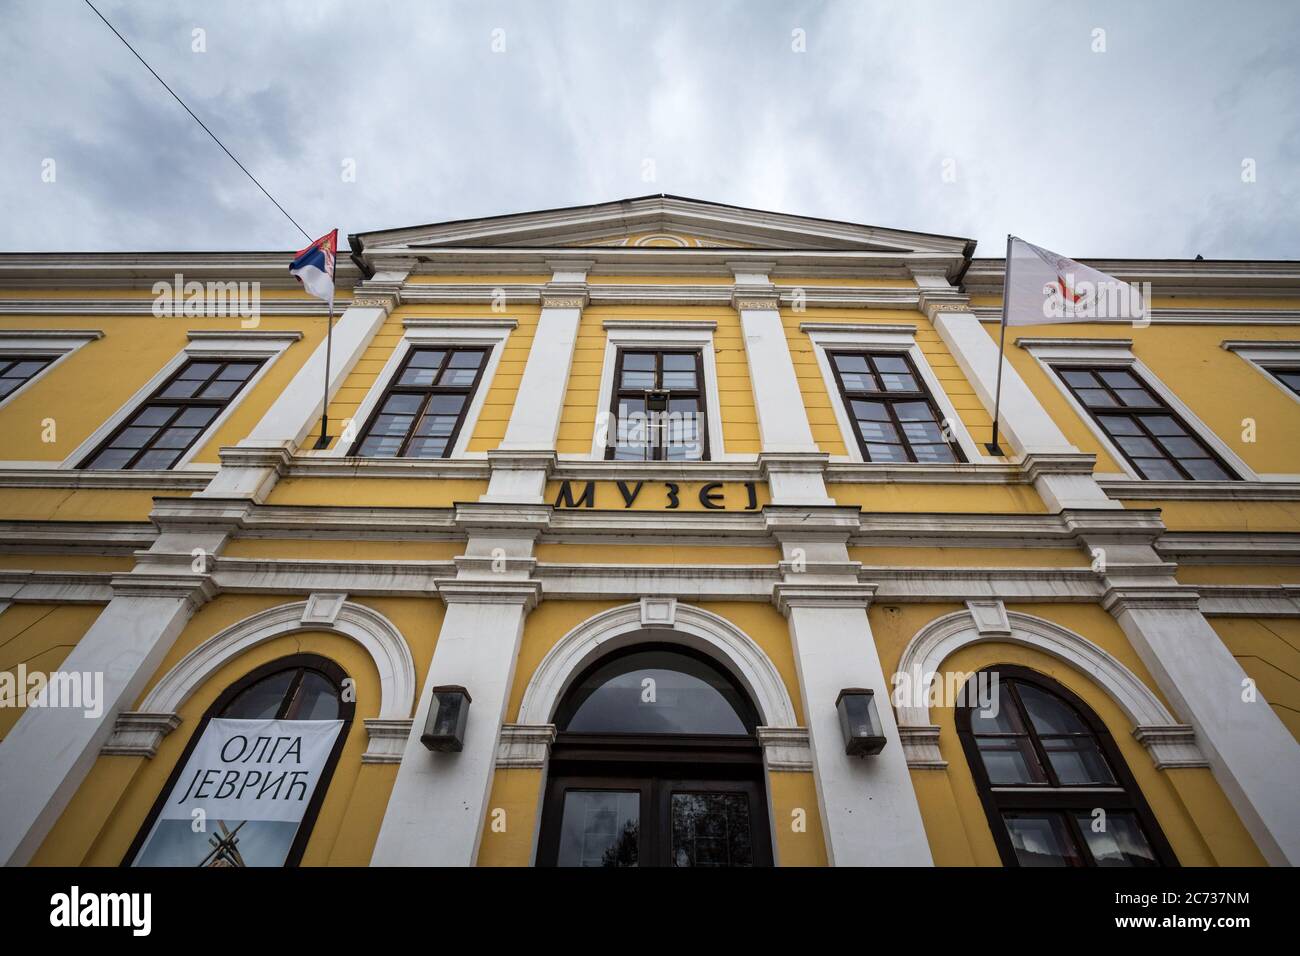 KRALJEVO, SERBIA - NOVEMBER 10, 2019: Main facade of the National Museum of Kralevo, also called narodni muzej, a cultural landmark of the city, promo Stock Photo